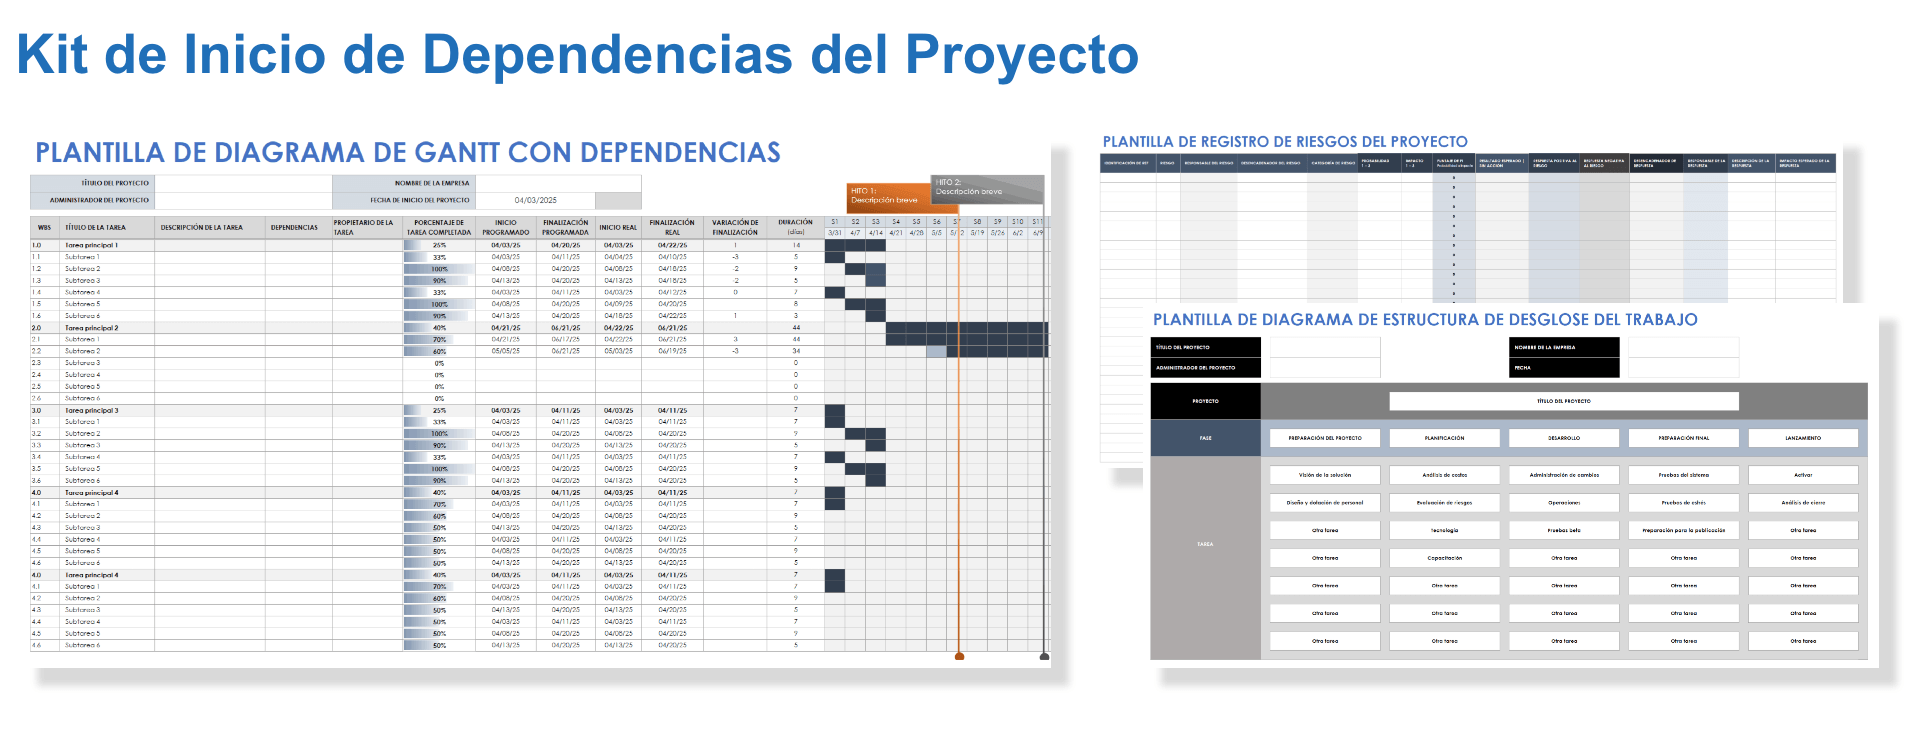 Kit de inicio de dependencias del proyecto